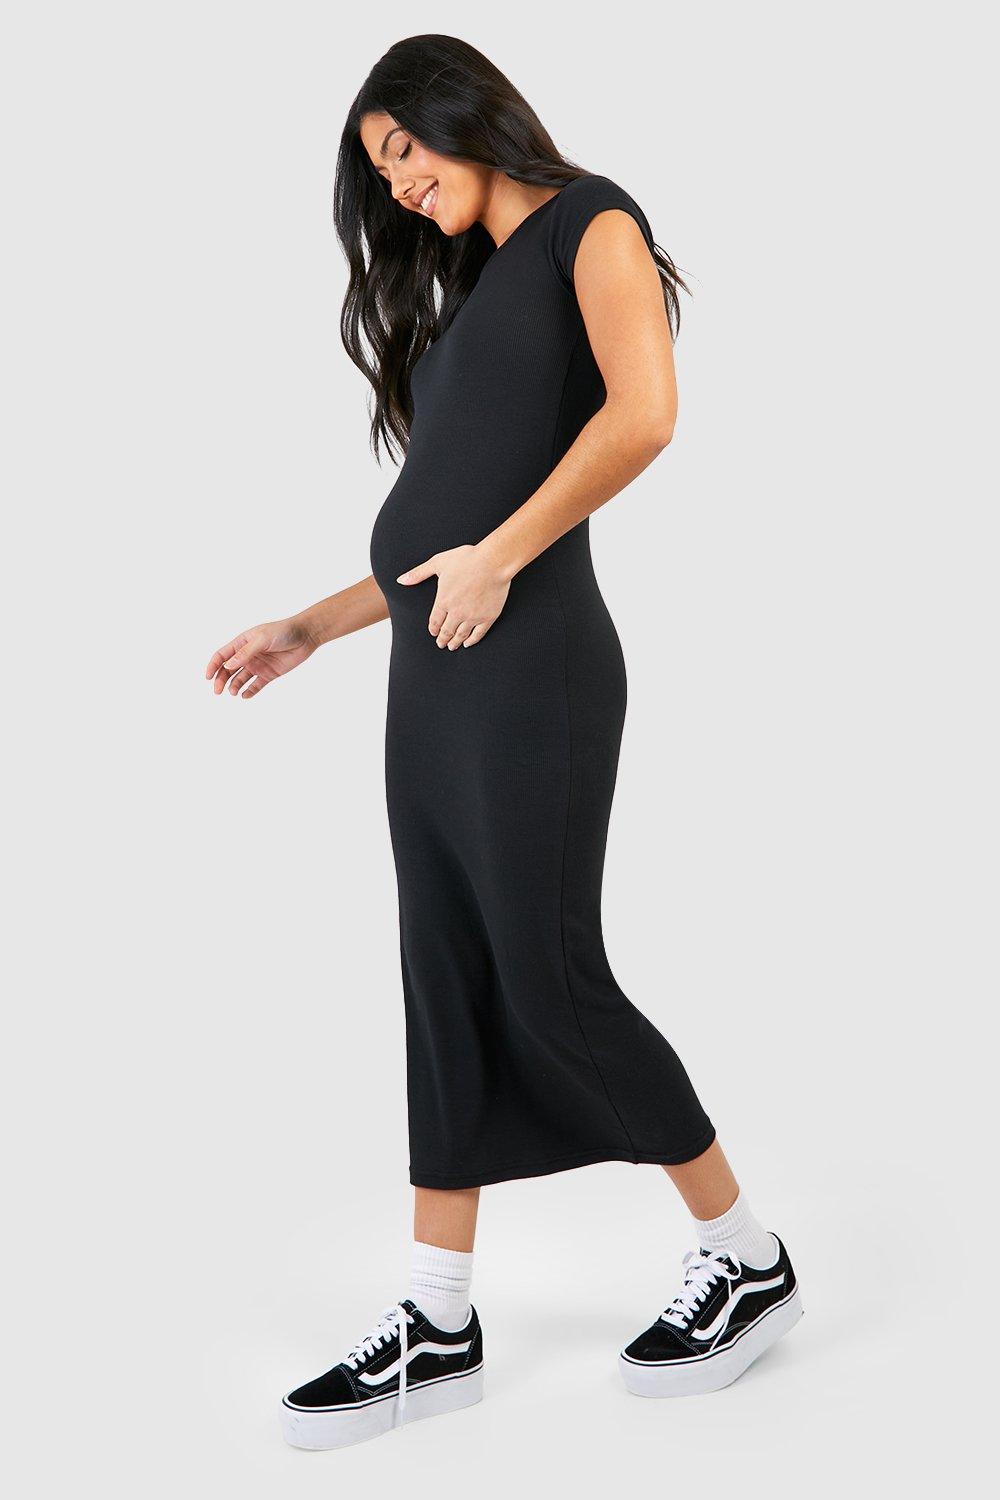 Booho Maternity Cap Sleeve Midaxi Rib Dress-2325-Black